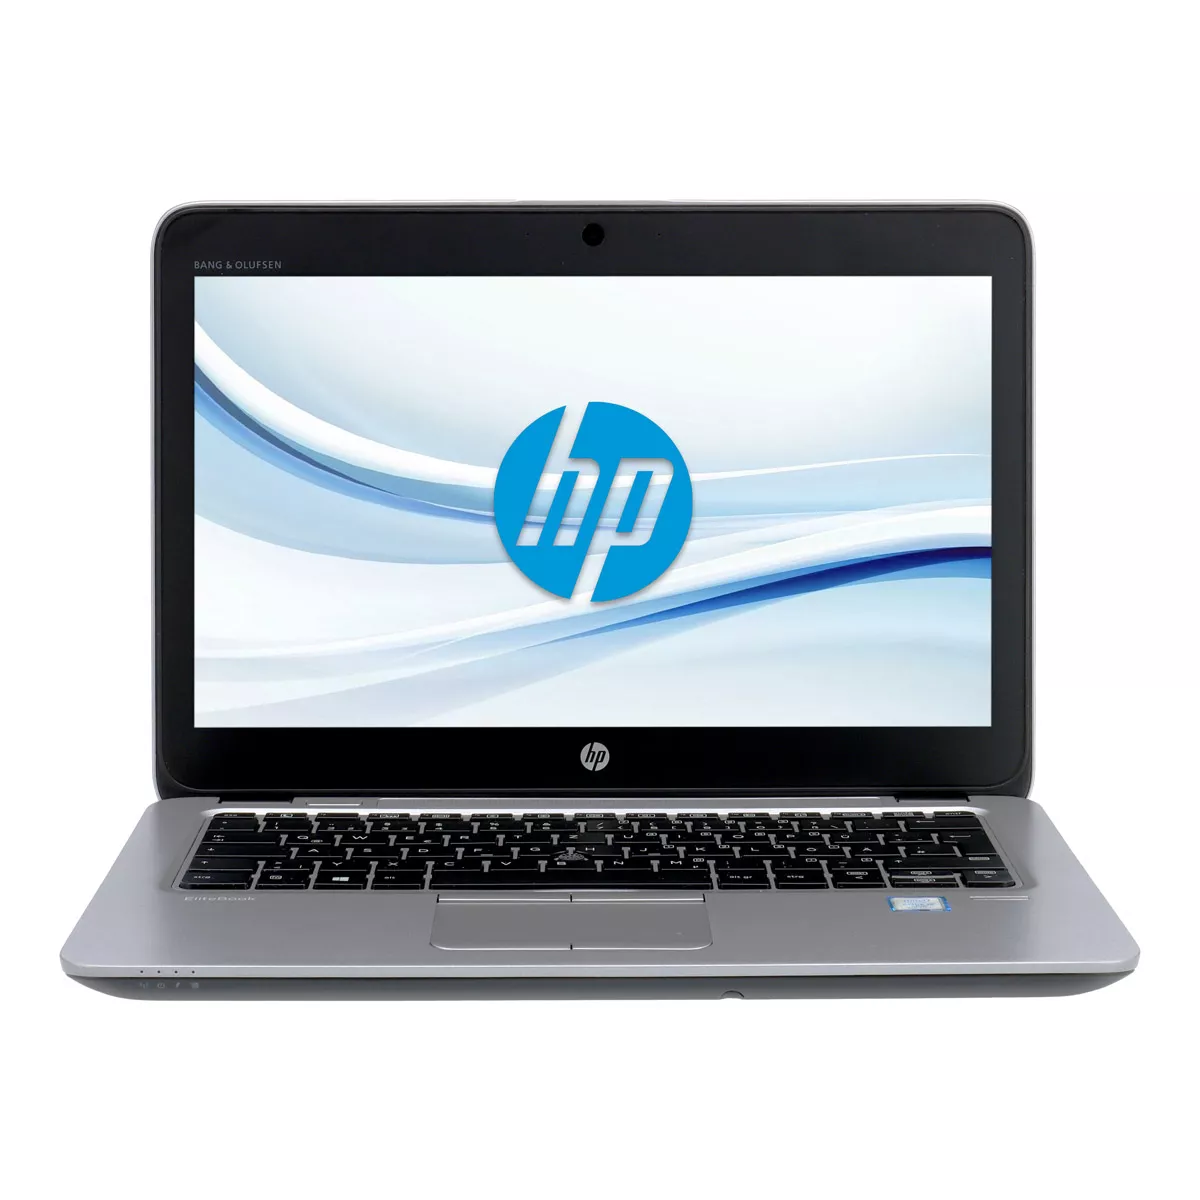 HP EliteBook 820 G3 Core i5 6200U 8 GB 180 GB SSD Webcam A+